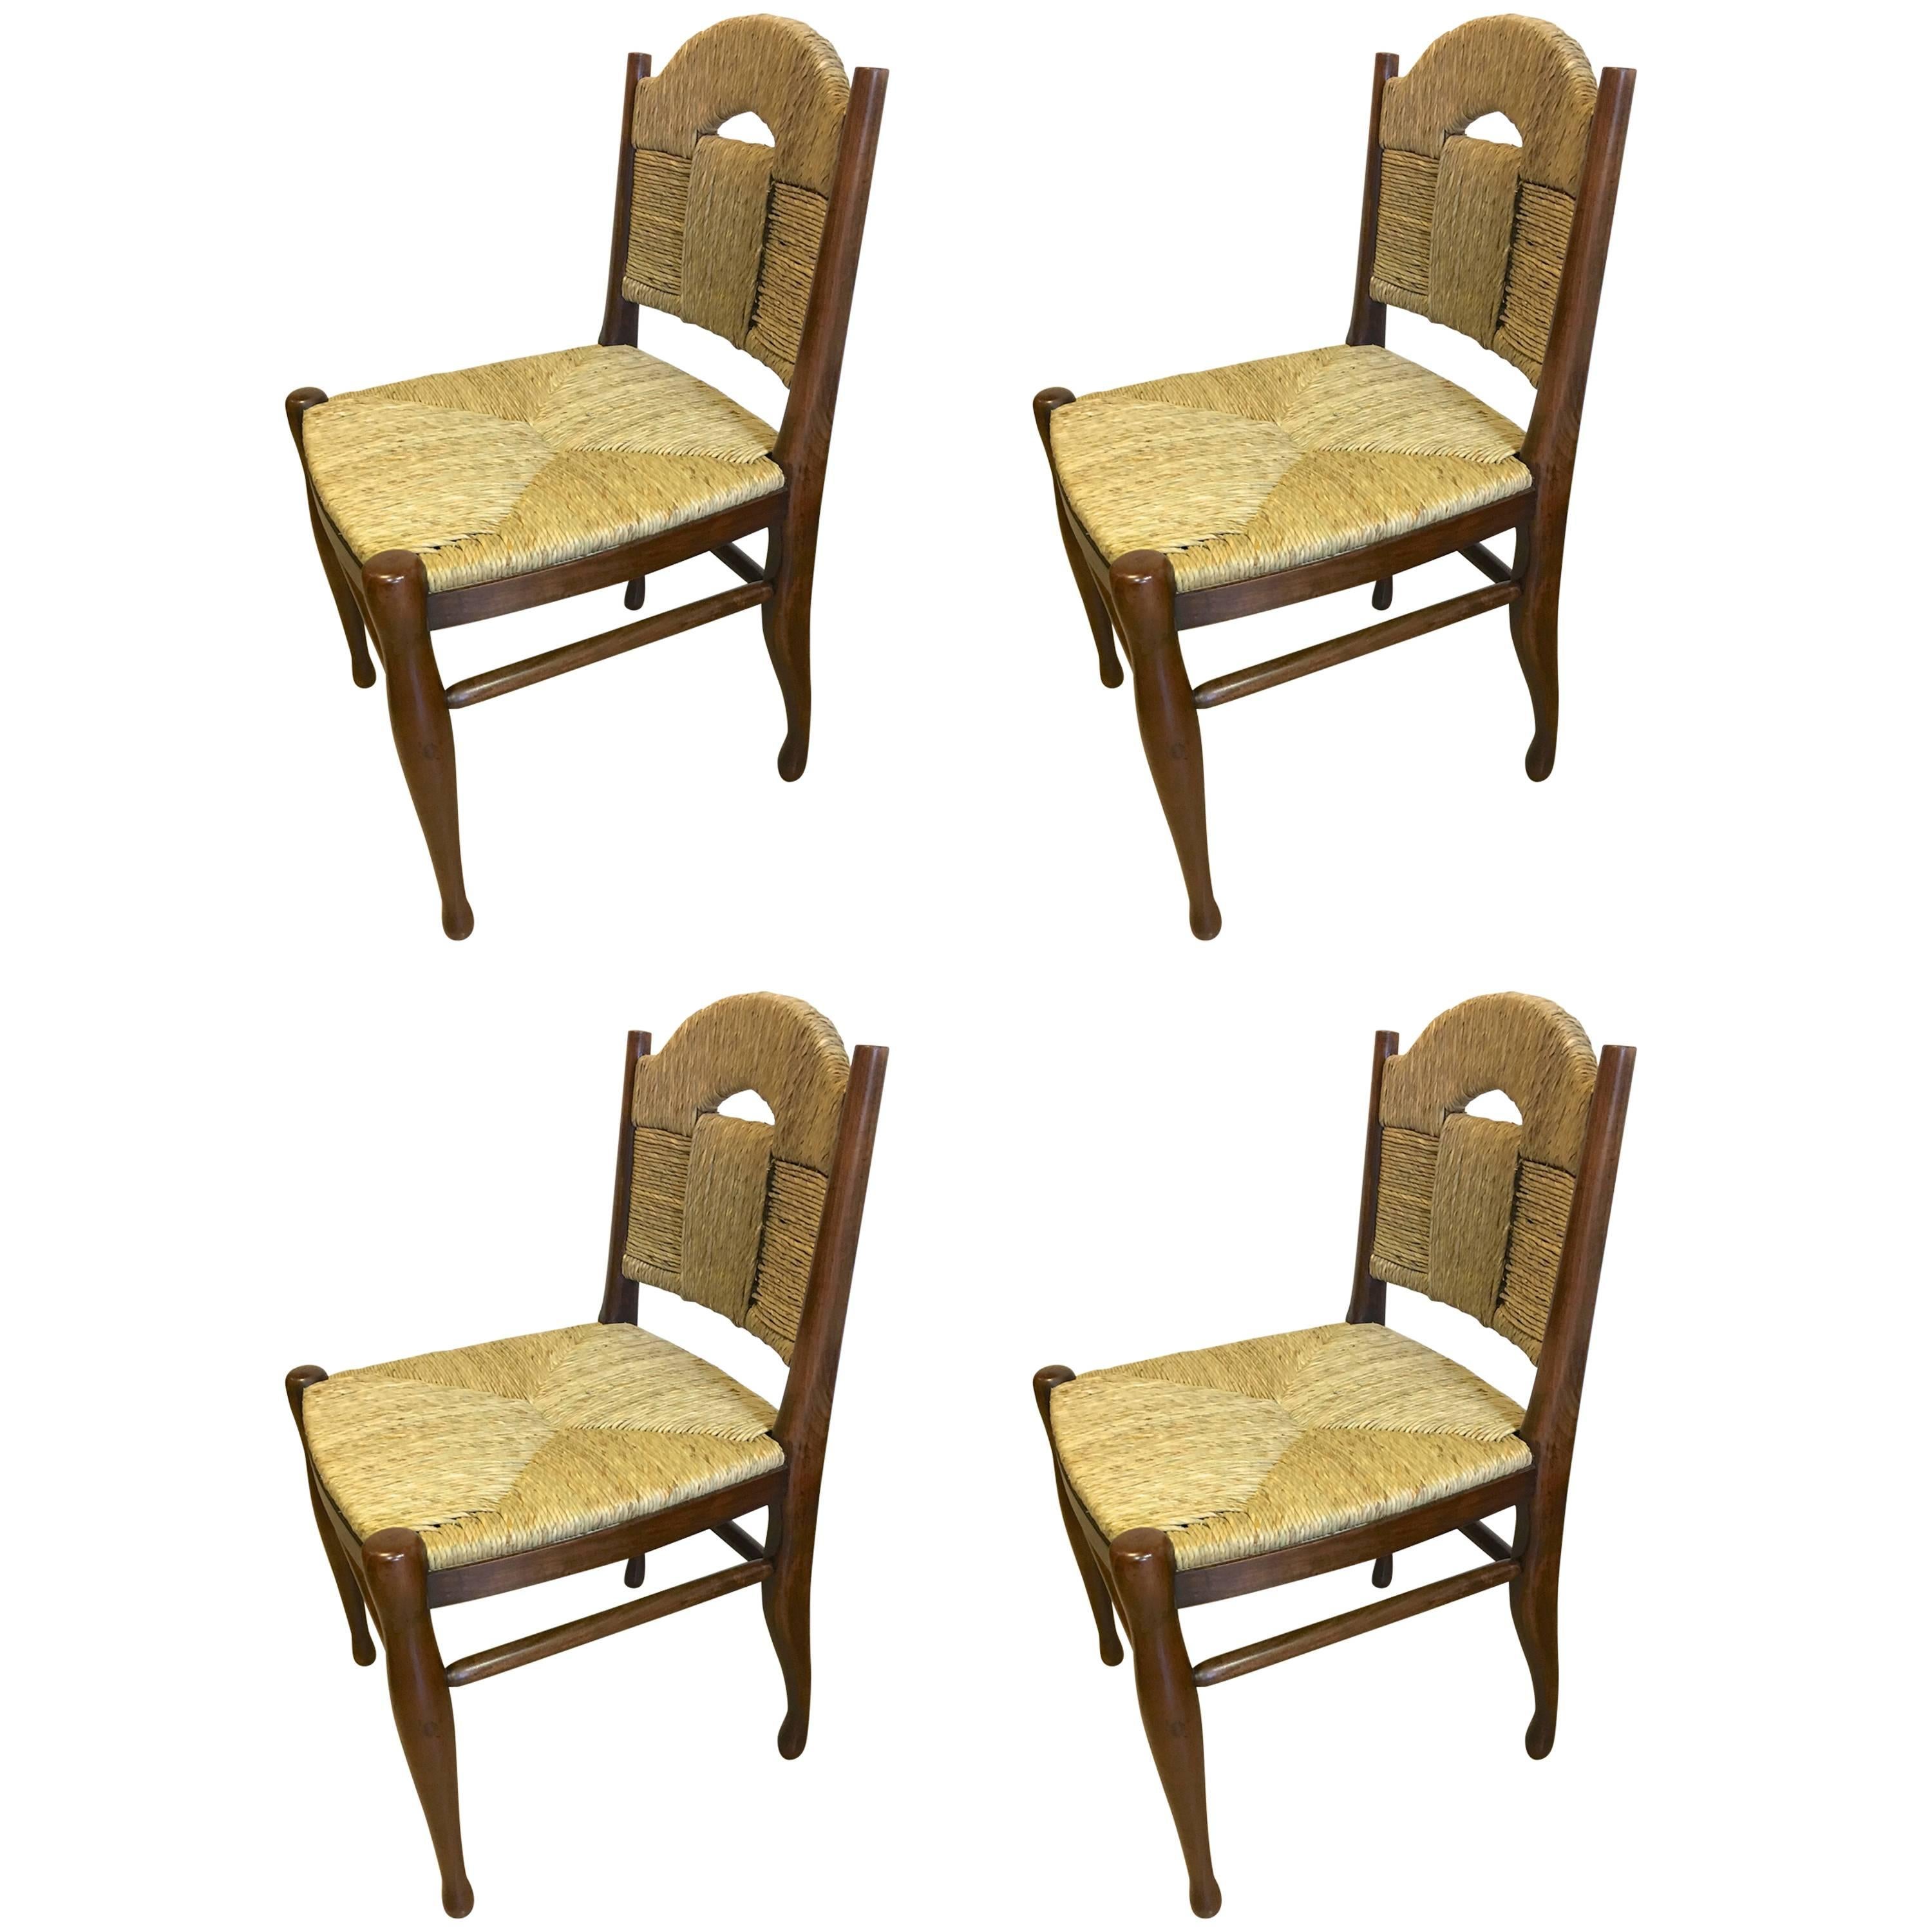 J.E.Ruhlmann Rare Set of Four Chairs Model "Rendez-vous des pêcheurs de truite" For Sale